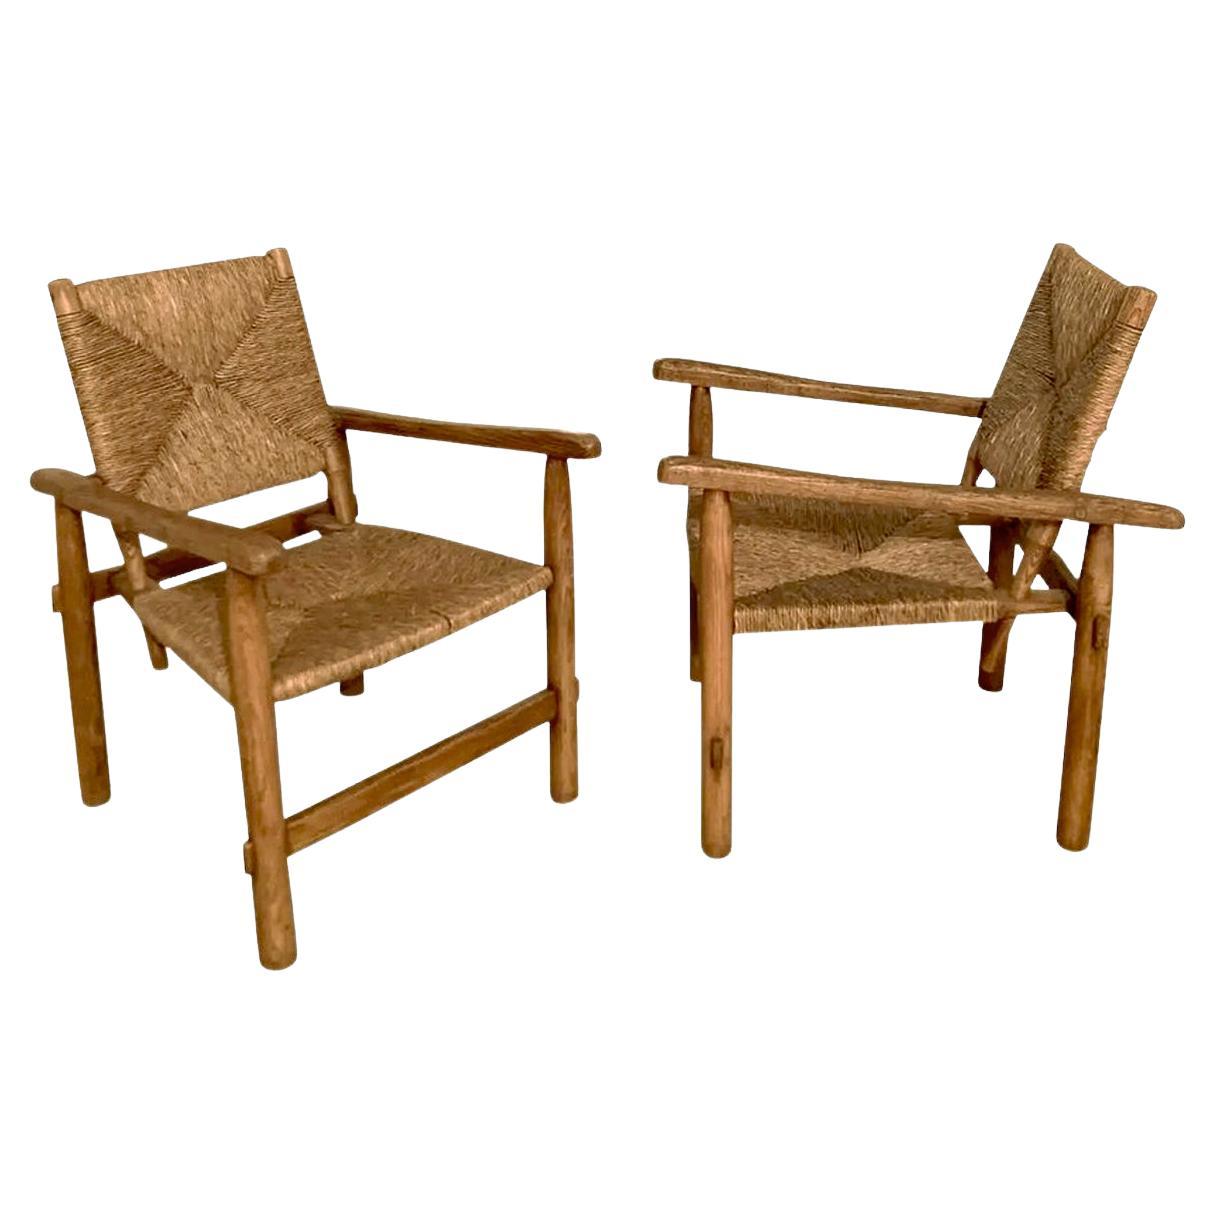 Paire de fauteuils authentiques authentiques, originaux, par Charlotte Perriand, vers 1945